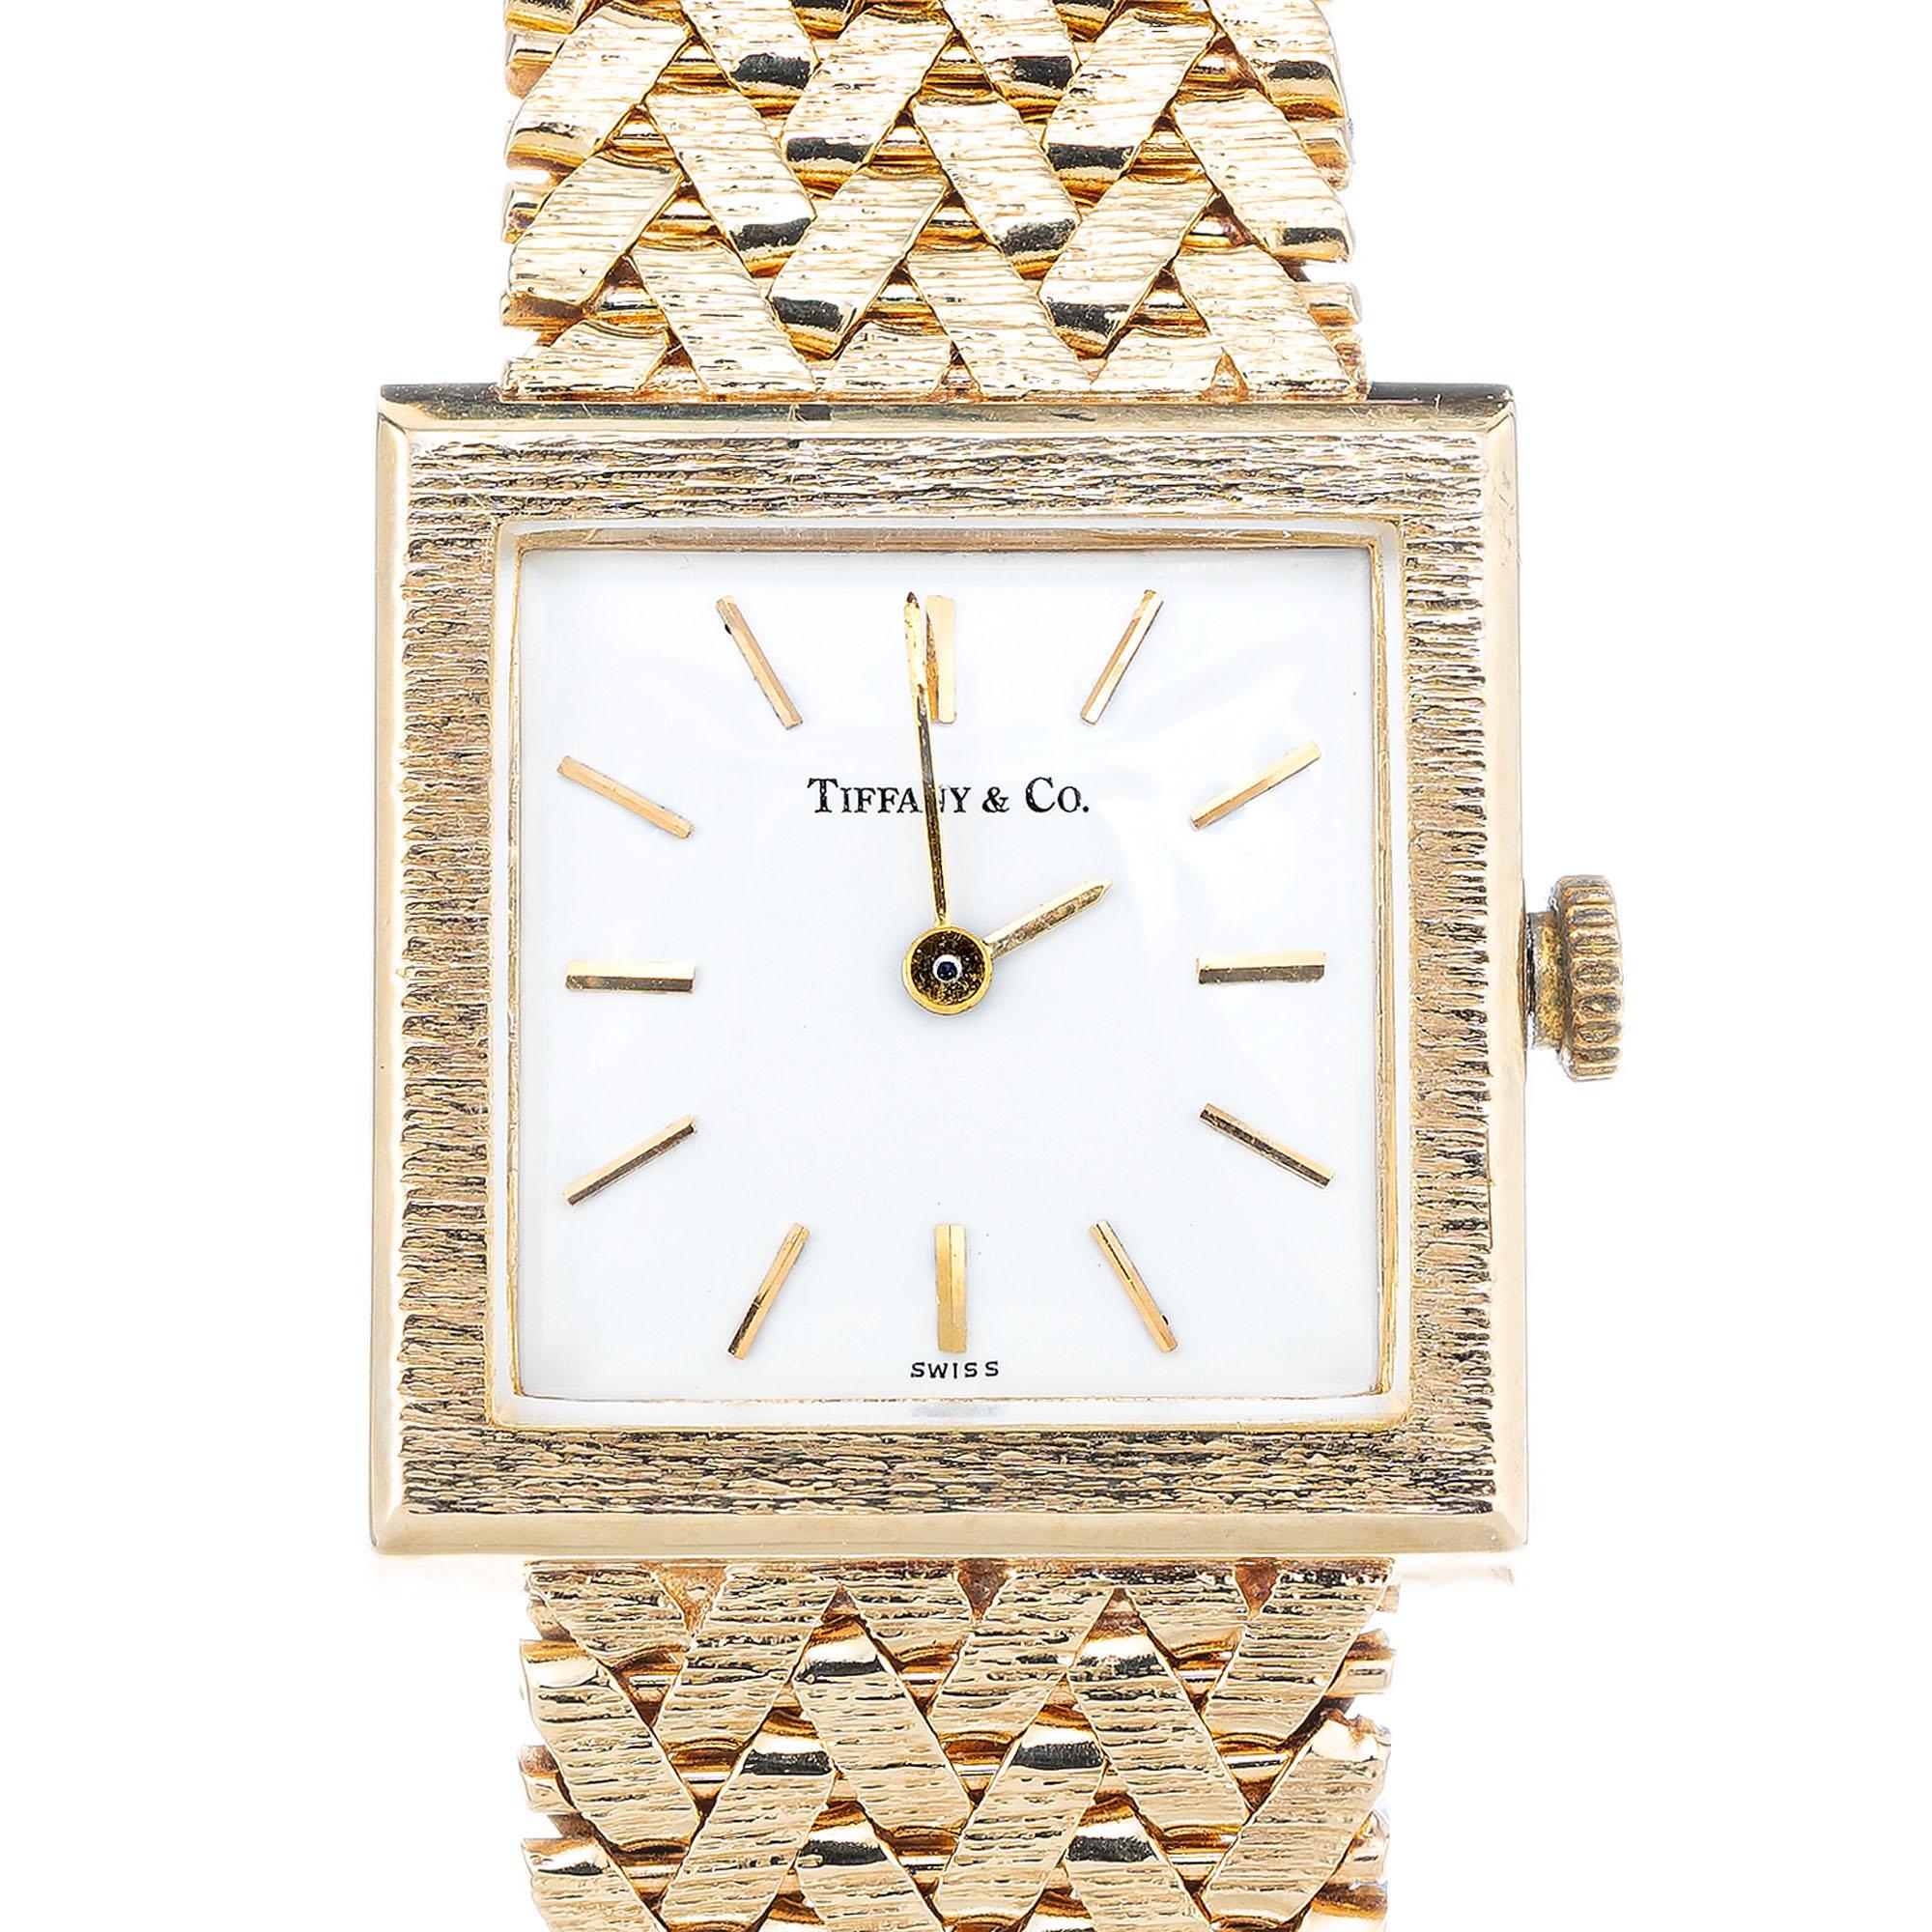 1970's 14k Gelbgold Baume und Mercier 17 Juwelen Uhr mit Mesh-Goldband im Handel von Tiffany & Co. Ein Juwelier kann das Band kürzen oder mit einer leiterartigen Verlängerung am Ende verlängern. Passt für ein 7-7,25 Zoll großes Handgelenk

Länge: